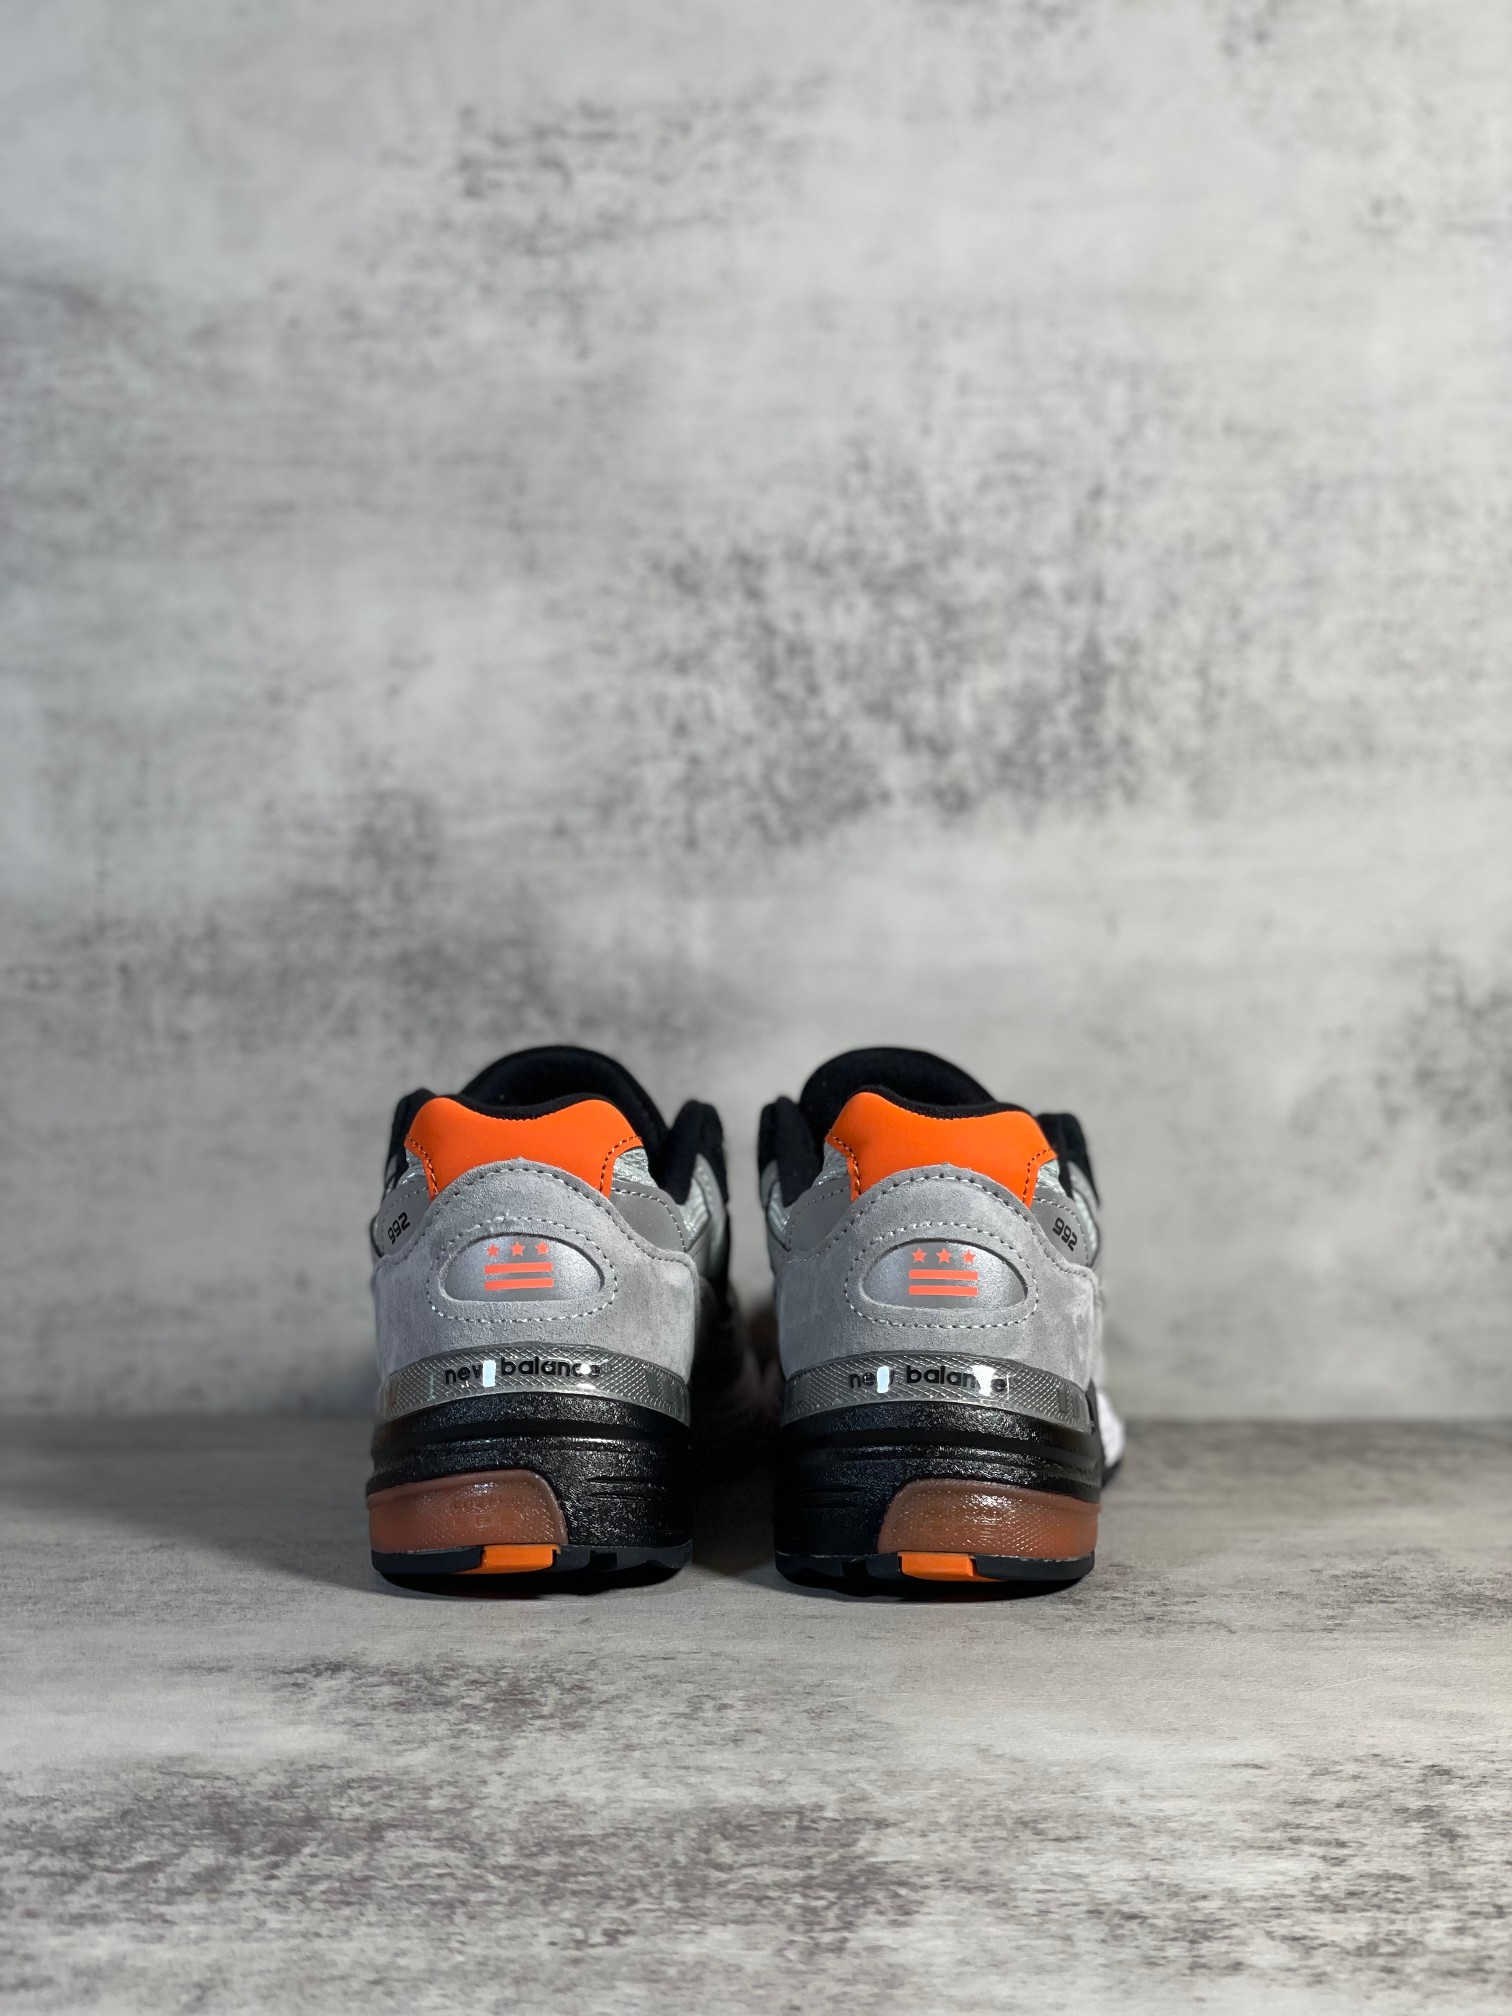 NB992联名款M992GBO外贸纯原版全码出货灰橙色全市场唯一原鞋开发全鞋使用原材料打造大底单独开模打